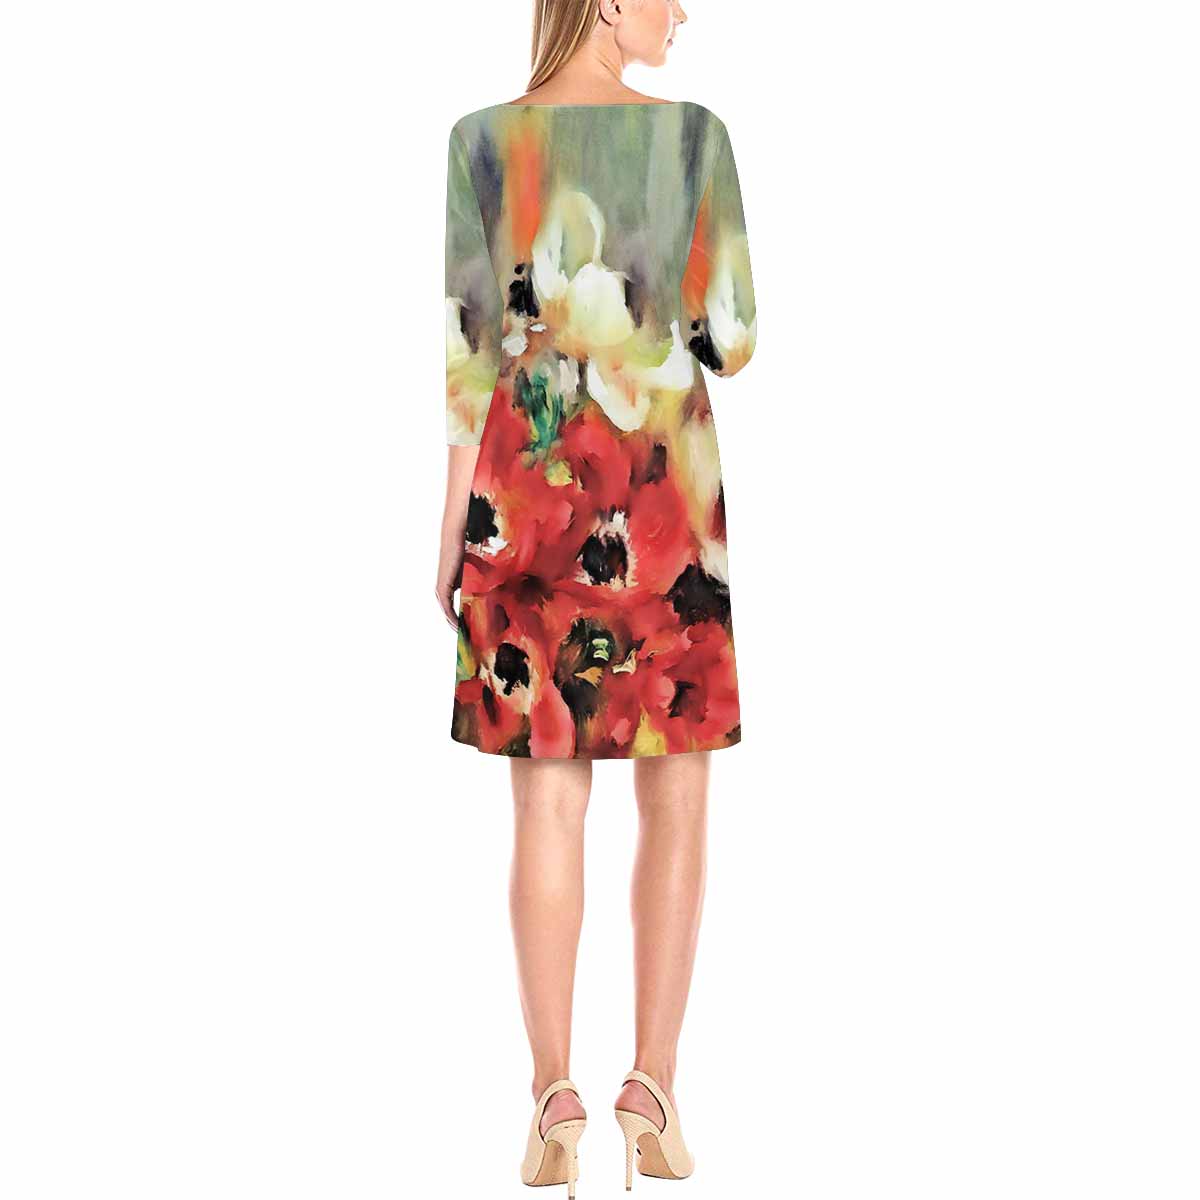 Vintage floral loose dress, model D29532 Design 14